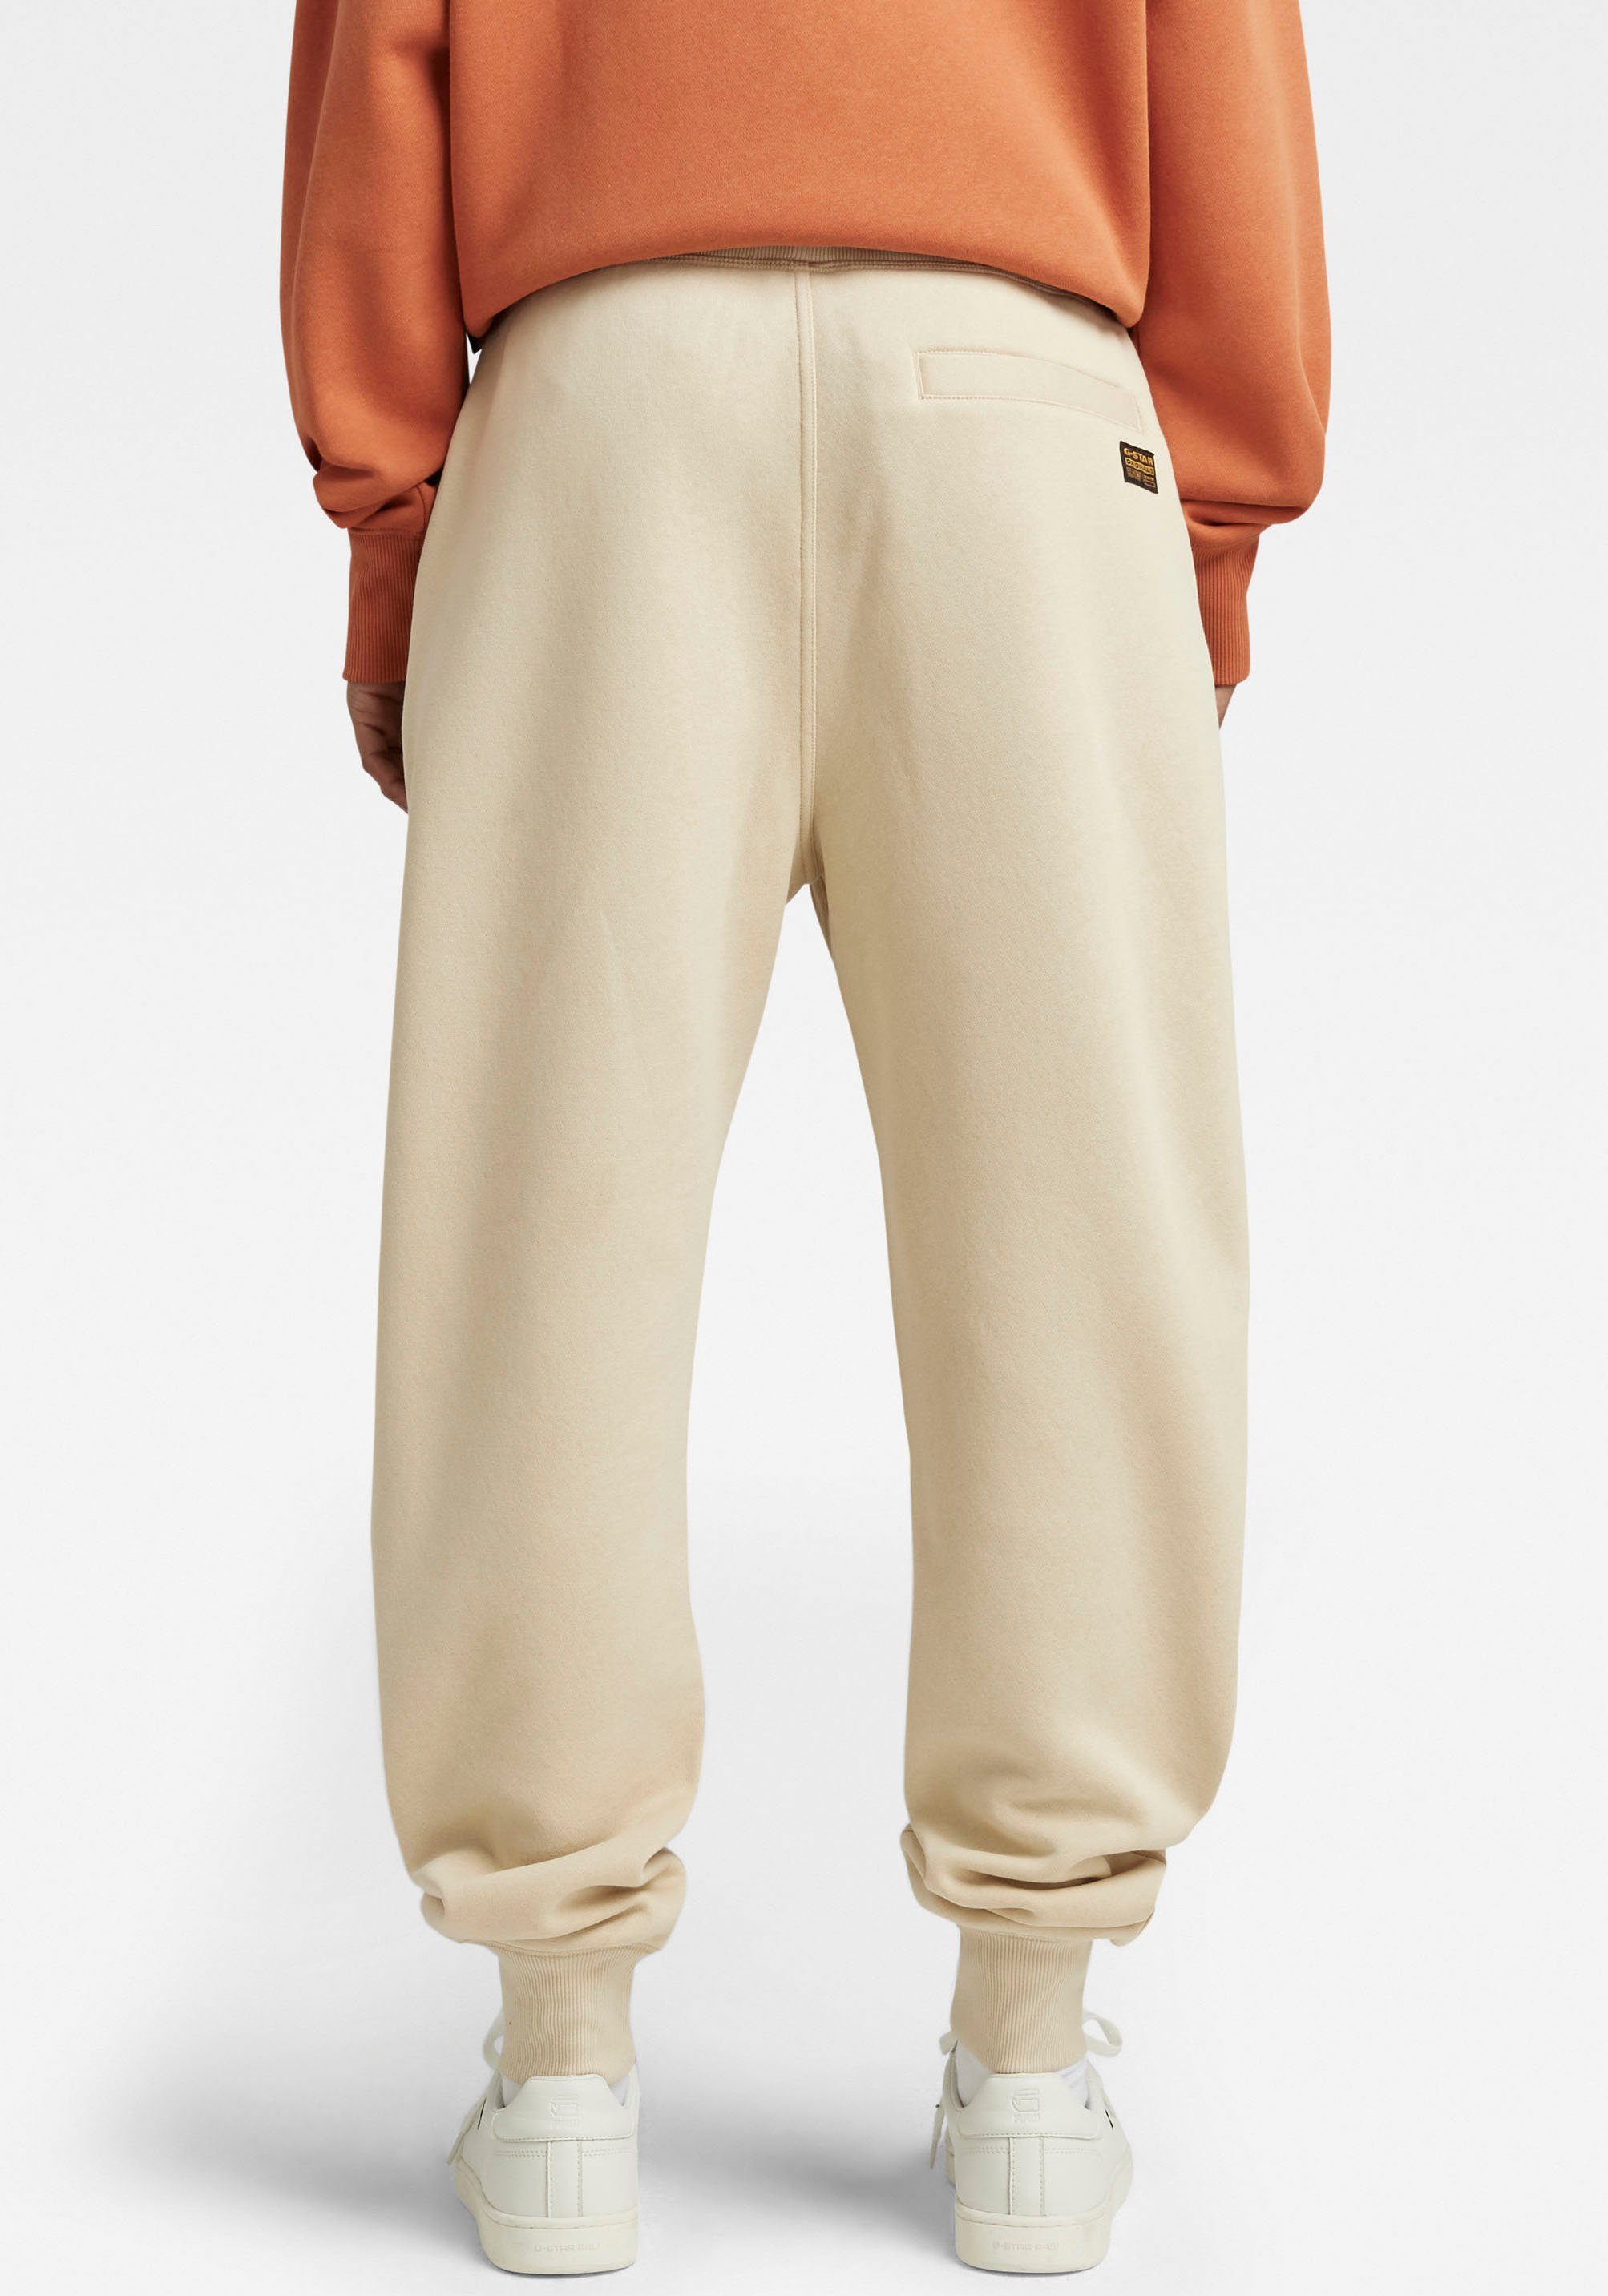 und Tunnelzug brown 2.0 core mit rice Sweatpants RAW Premium G-Star Bund Sweathose elastischen